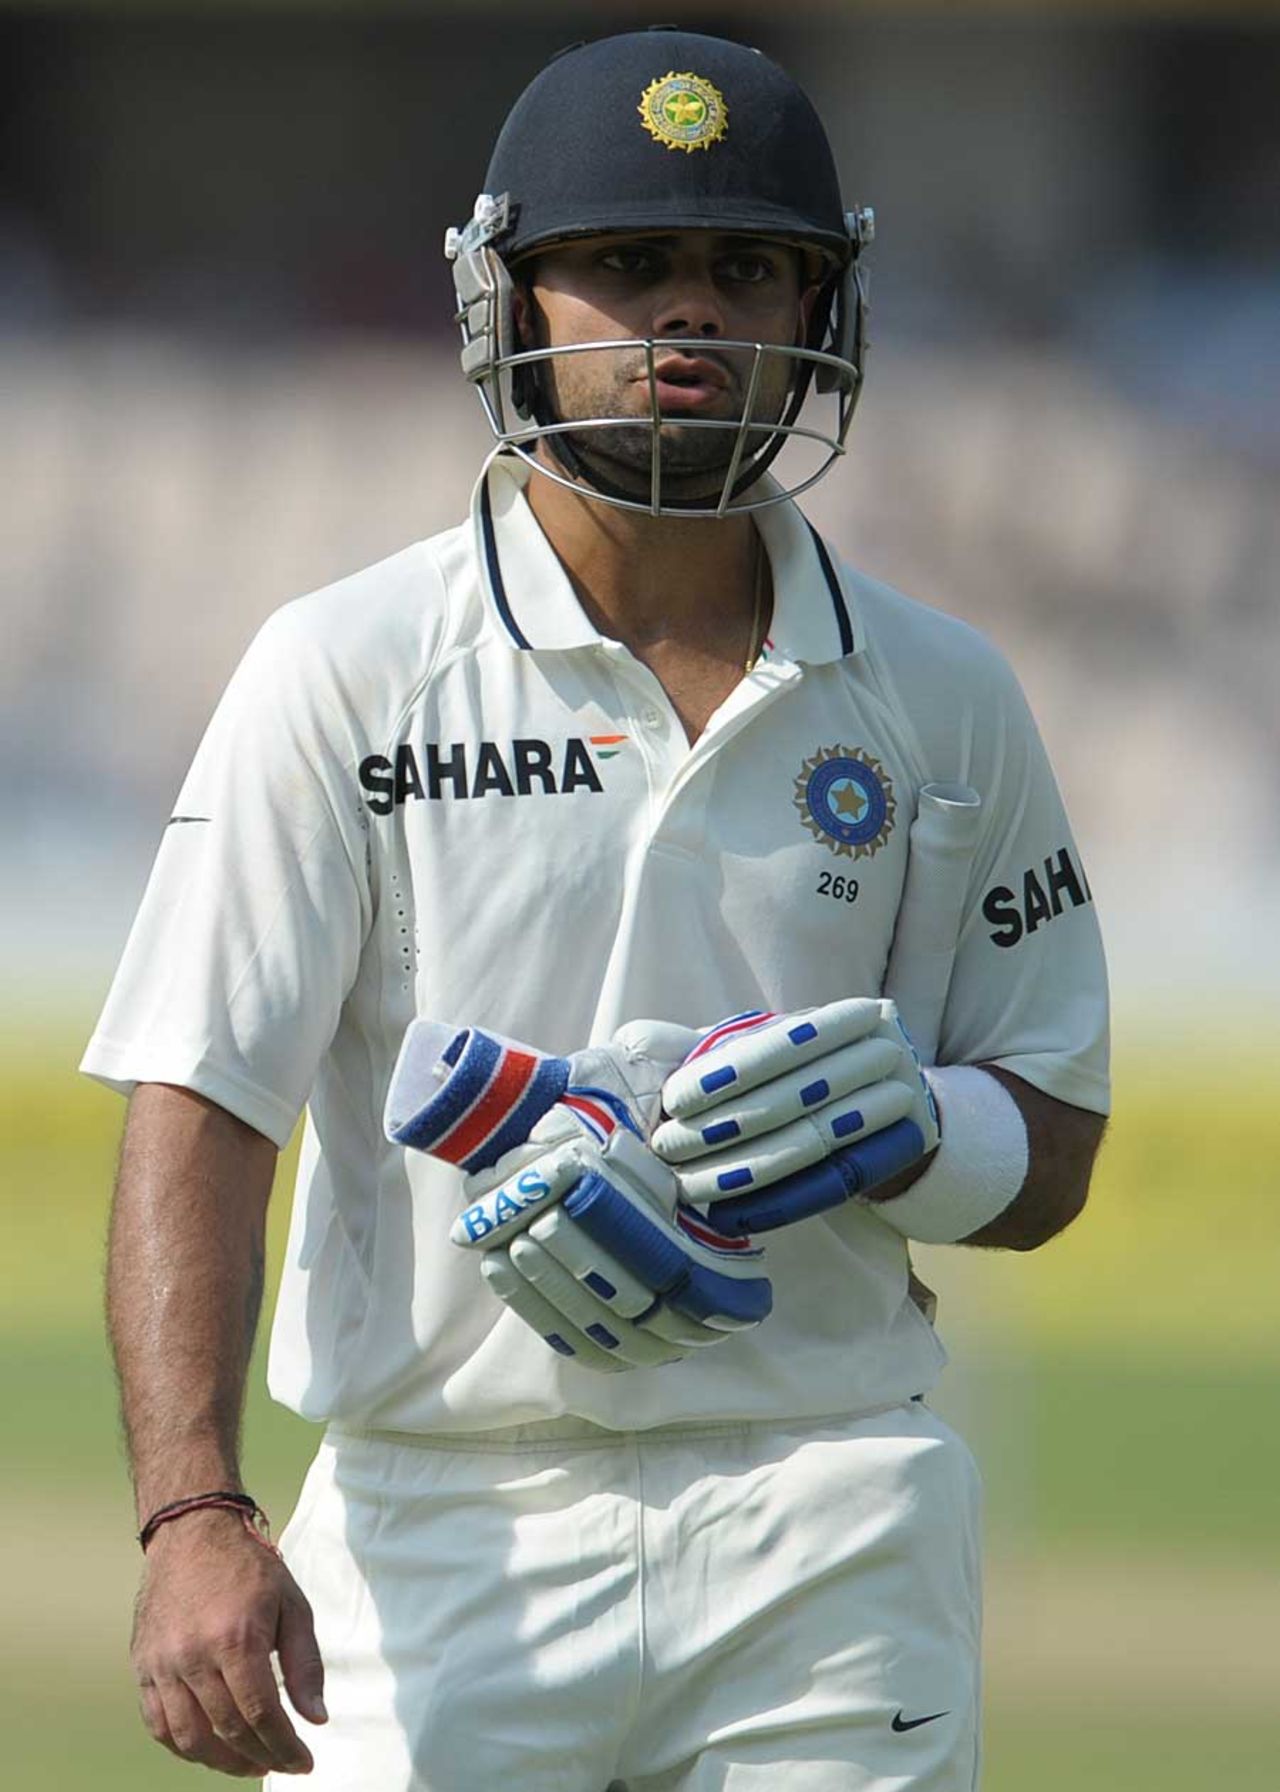 Virat Kohli walks back after being dismissed, India v New Zealand, 1st Test, Hyderabad, 1st day, August 23, 2012